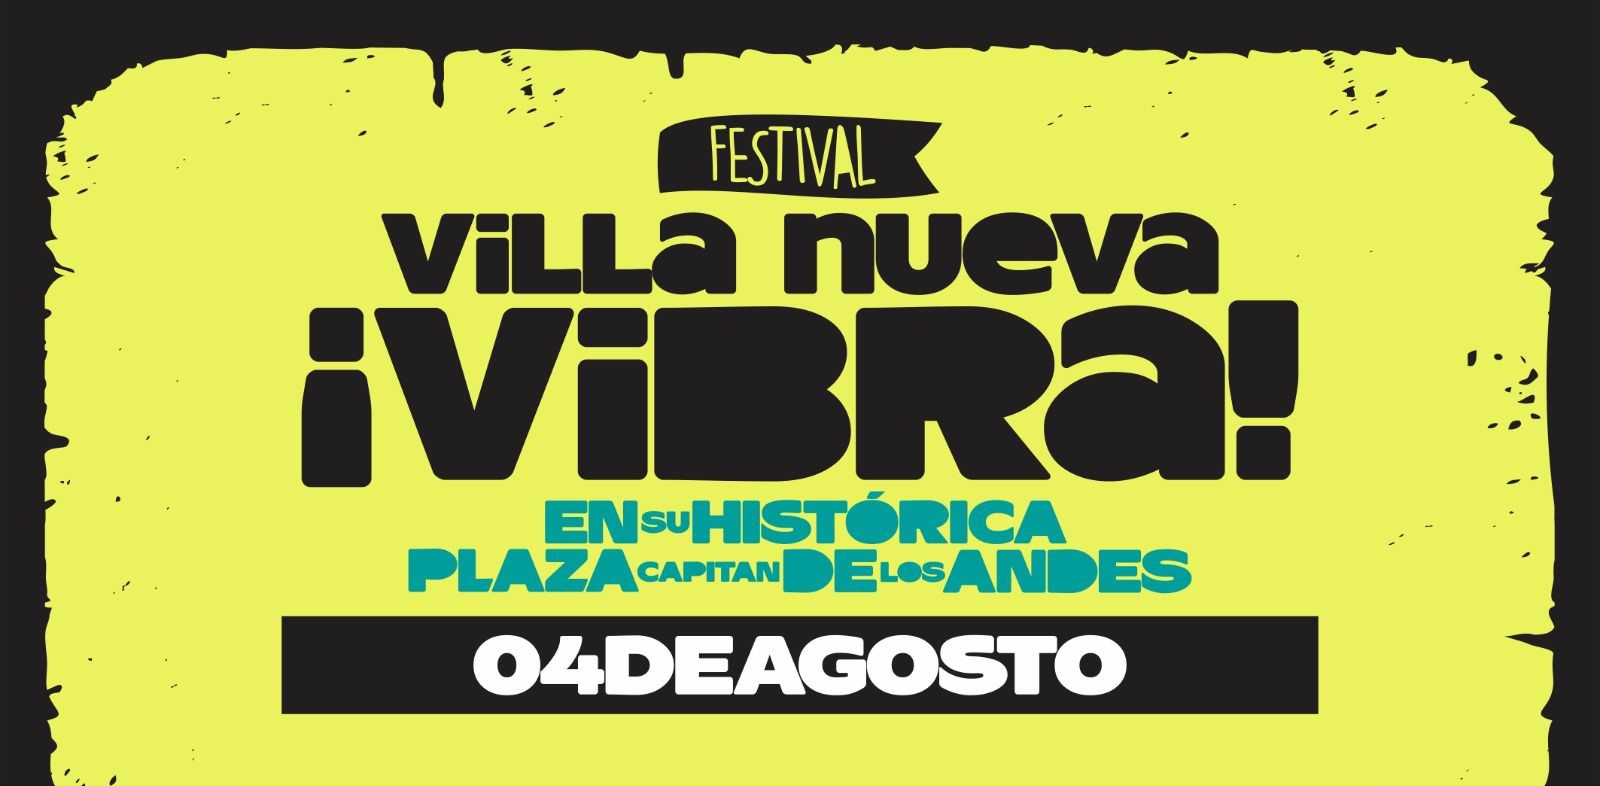 El domingo 4 de agosto se realizará el Festival Villa Nueva Vibra